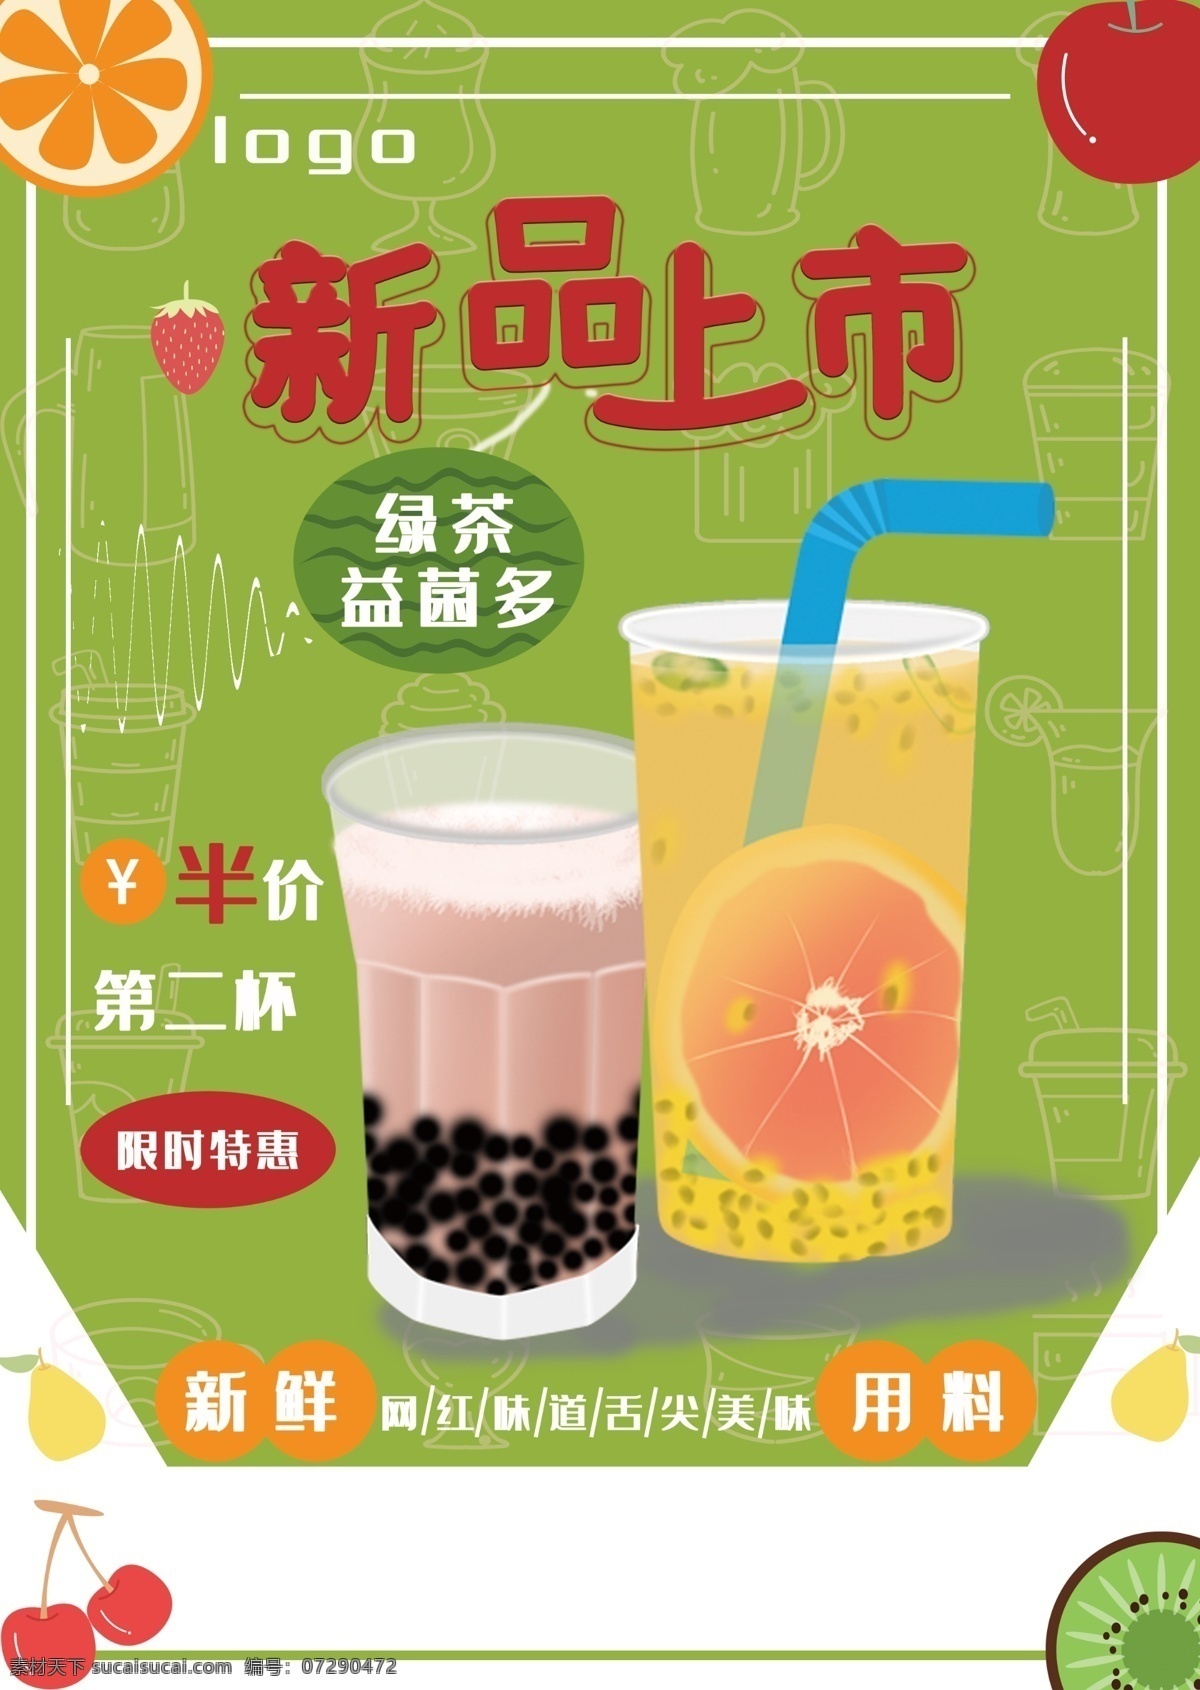 奶茶店 新品上市 海报 新品 奶茶 宣传 促销 上市 全场 半价 夏日 欢迎 来购 清凉 一夏